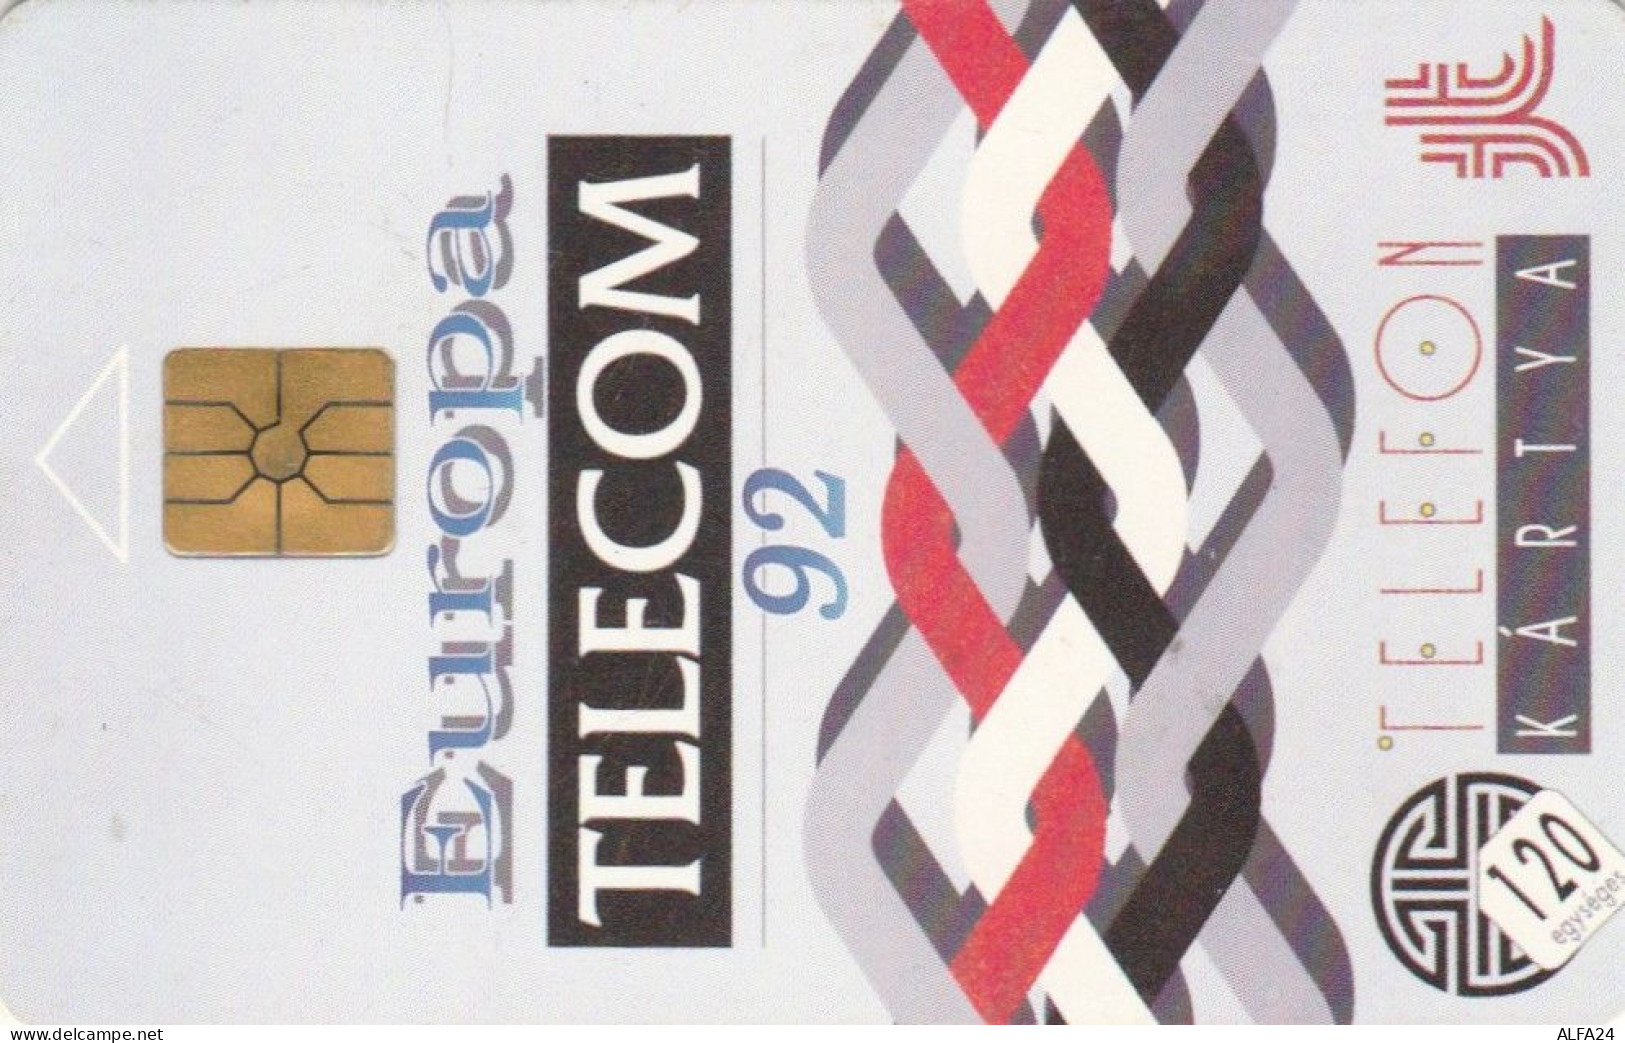 PHONE CARD UNGHERIA EUROPA TELECOM 92 (E96.19.2 - Hungary